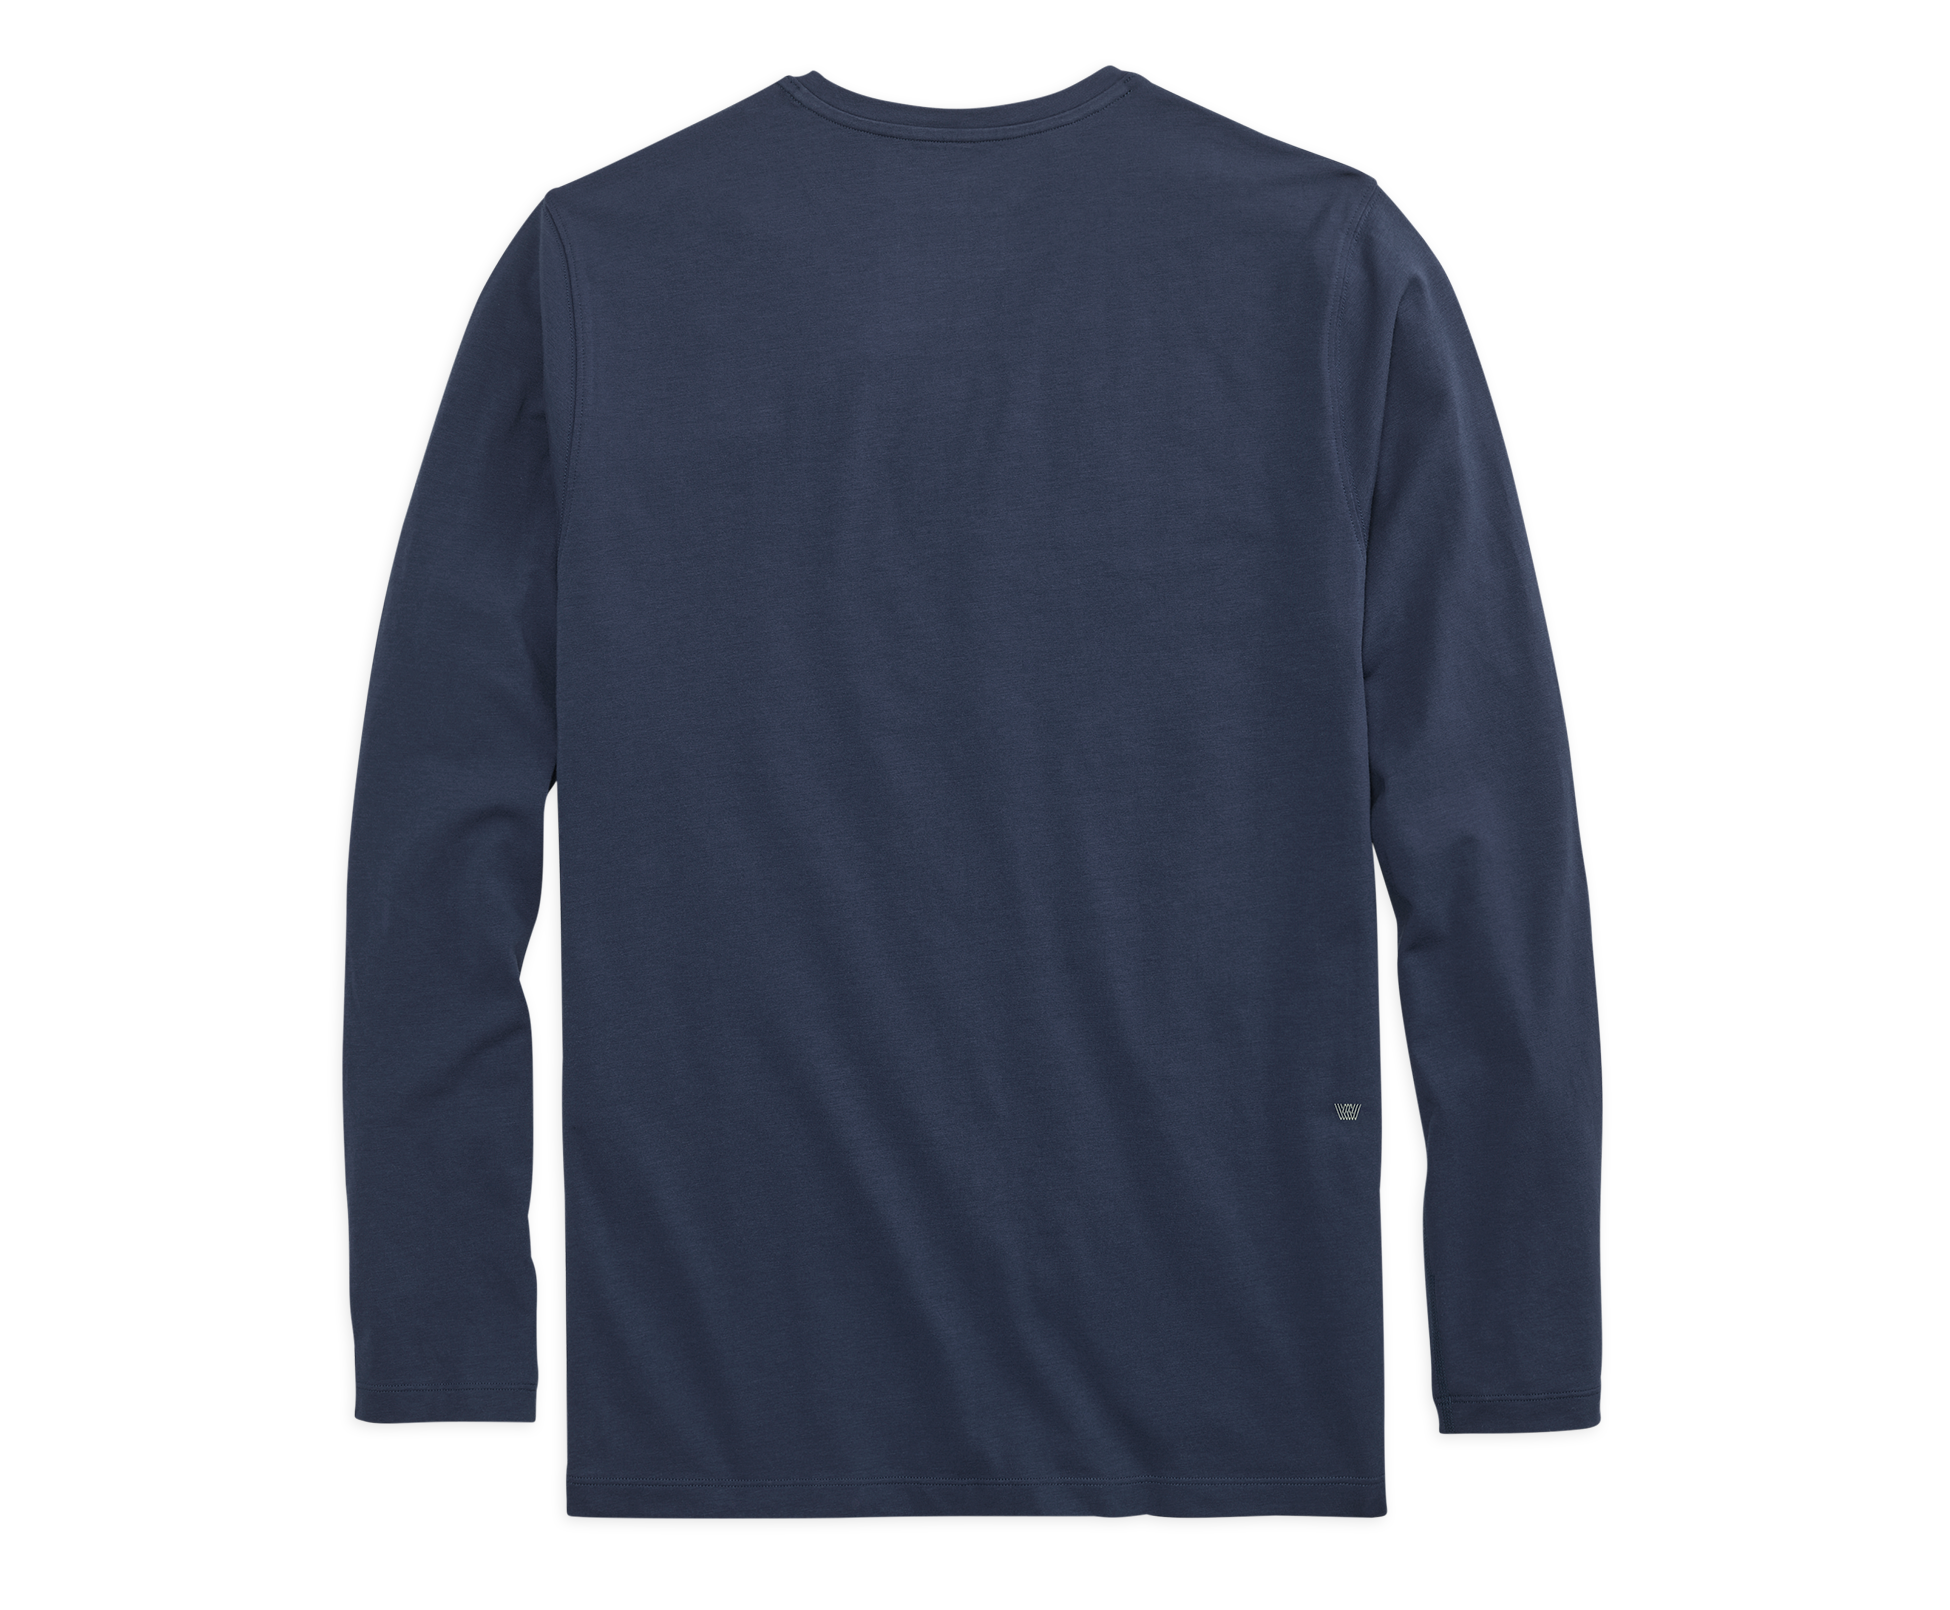 Mack Weldon Men's Pima Long Sleeve T-Shirt Moss